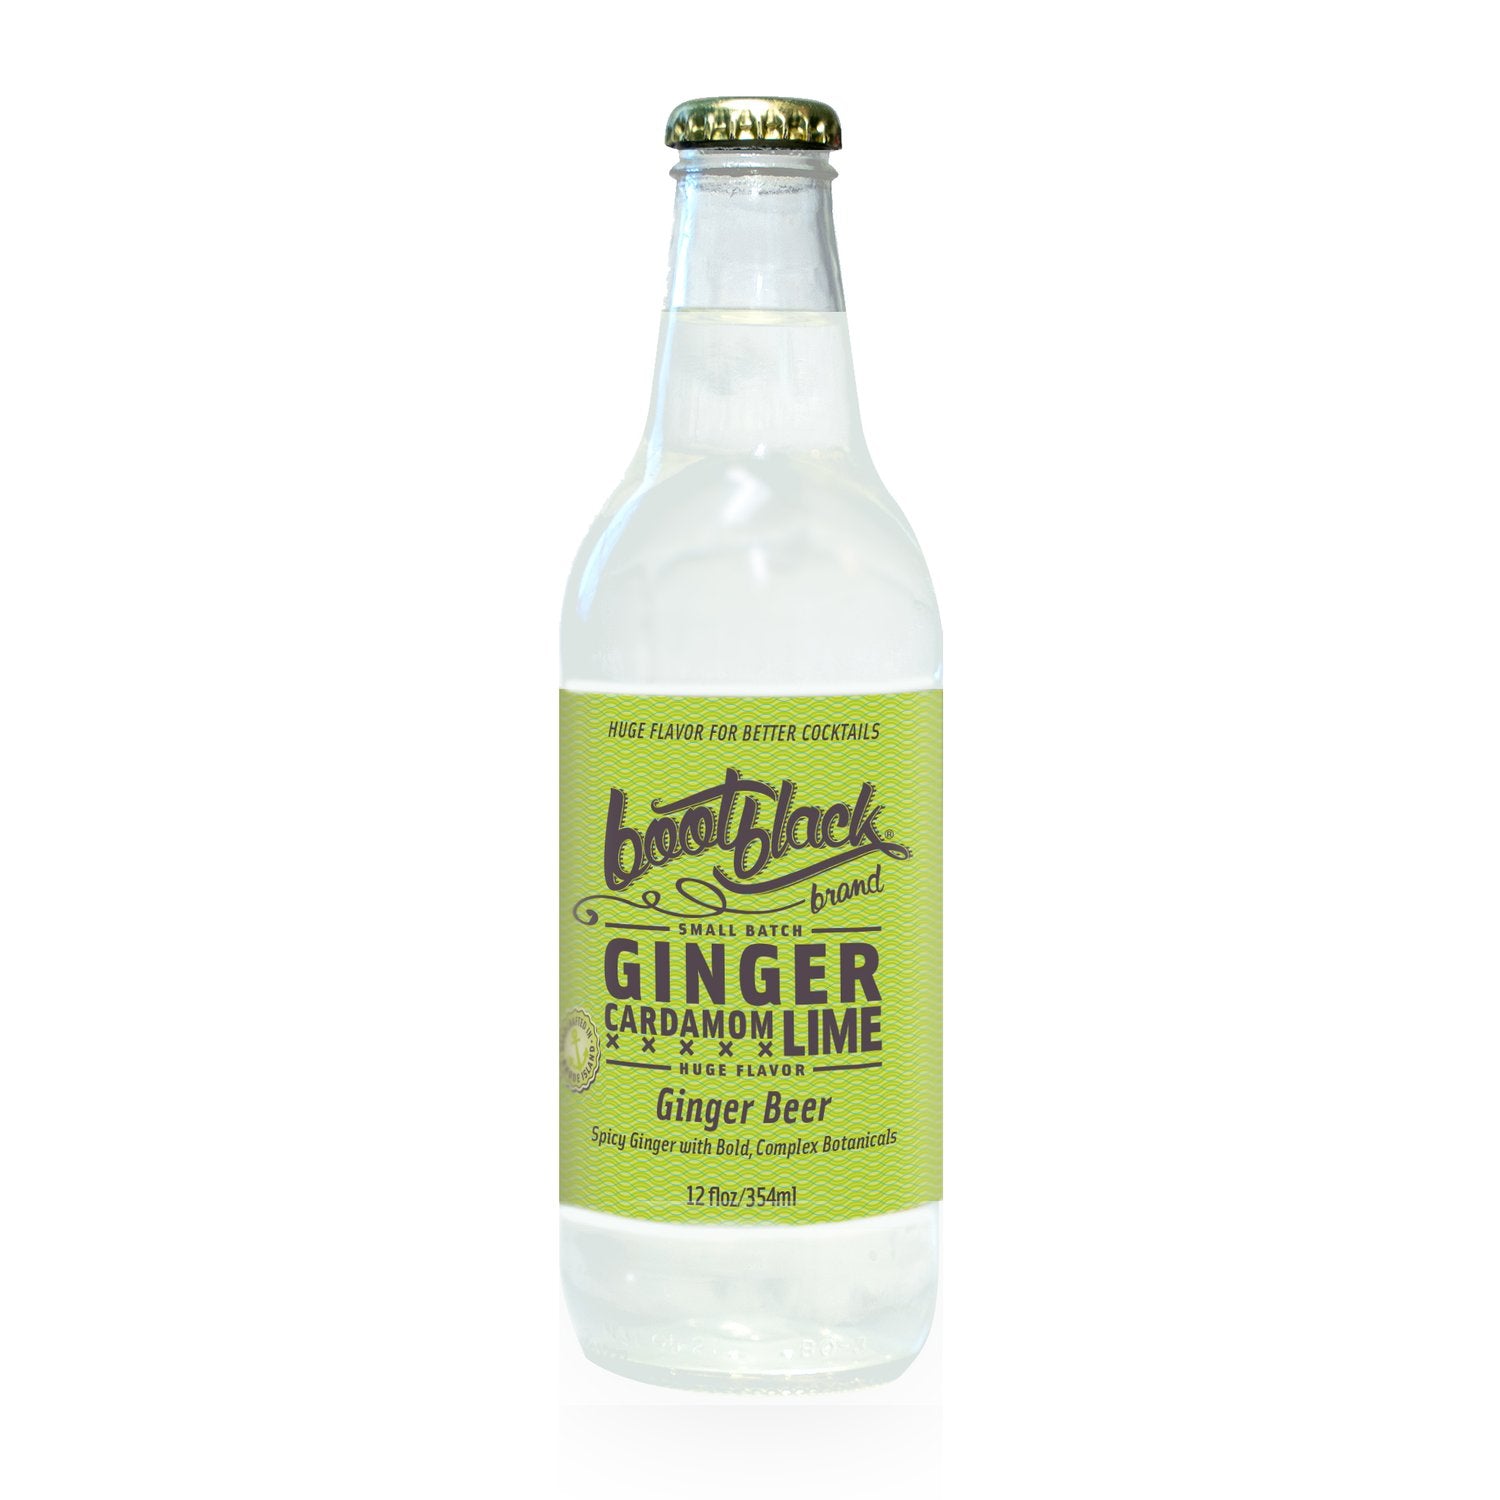 Ginger Beer - Ginger Cardamom Lime - 12 Pack